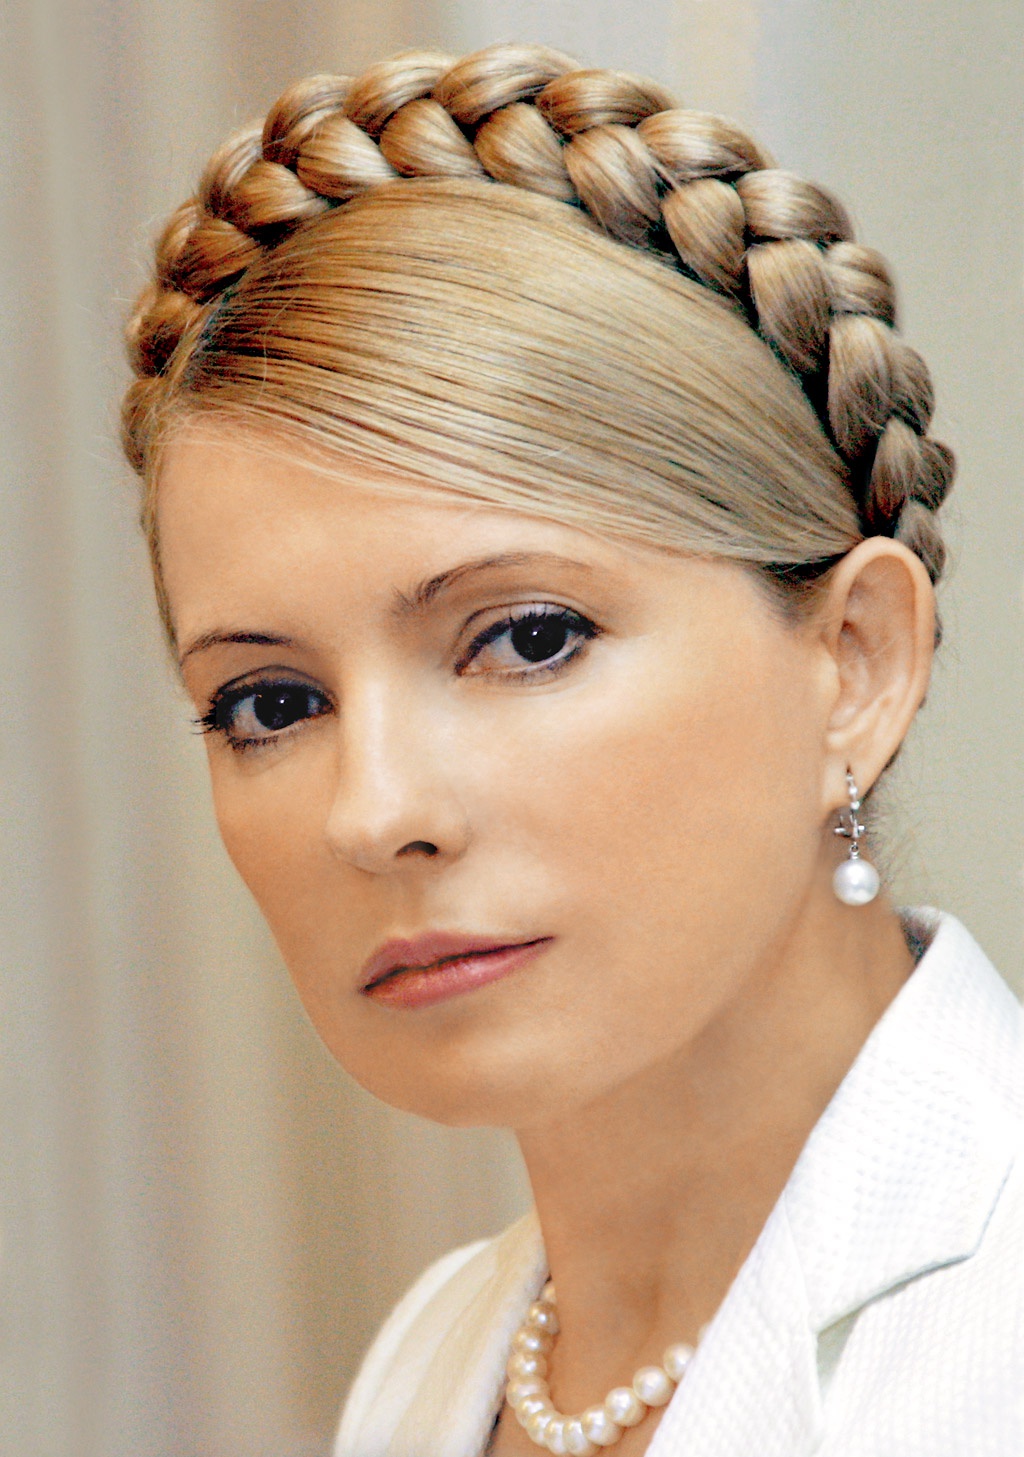 Юлия Тимошенко видит угрозу для Украины в минском протоколе и просит от Порошенко разъяснений